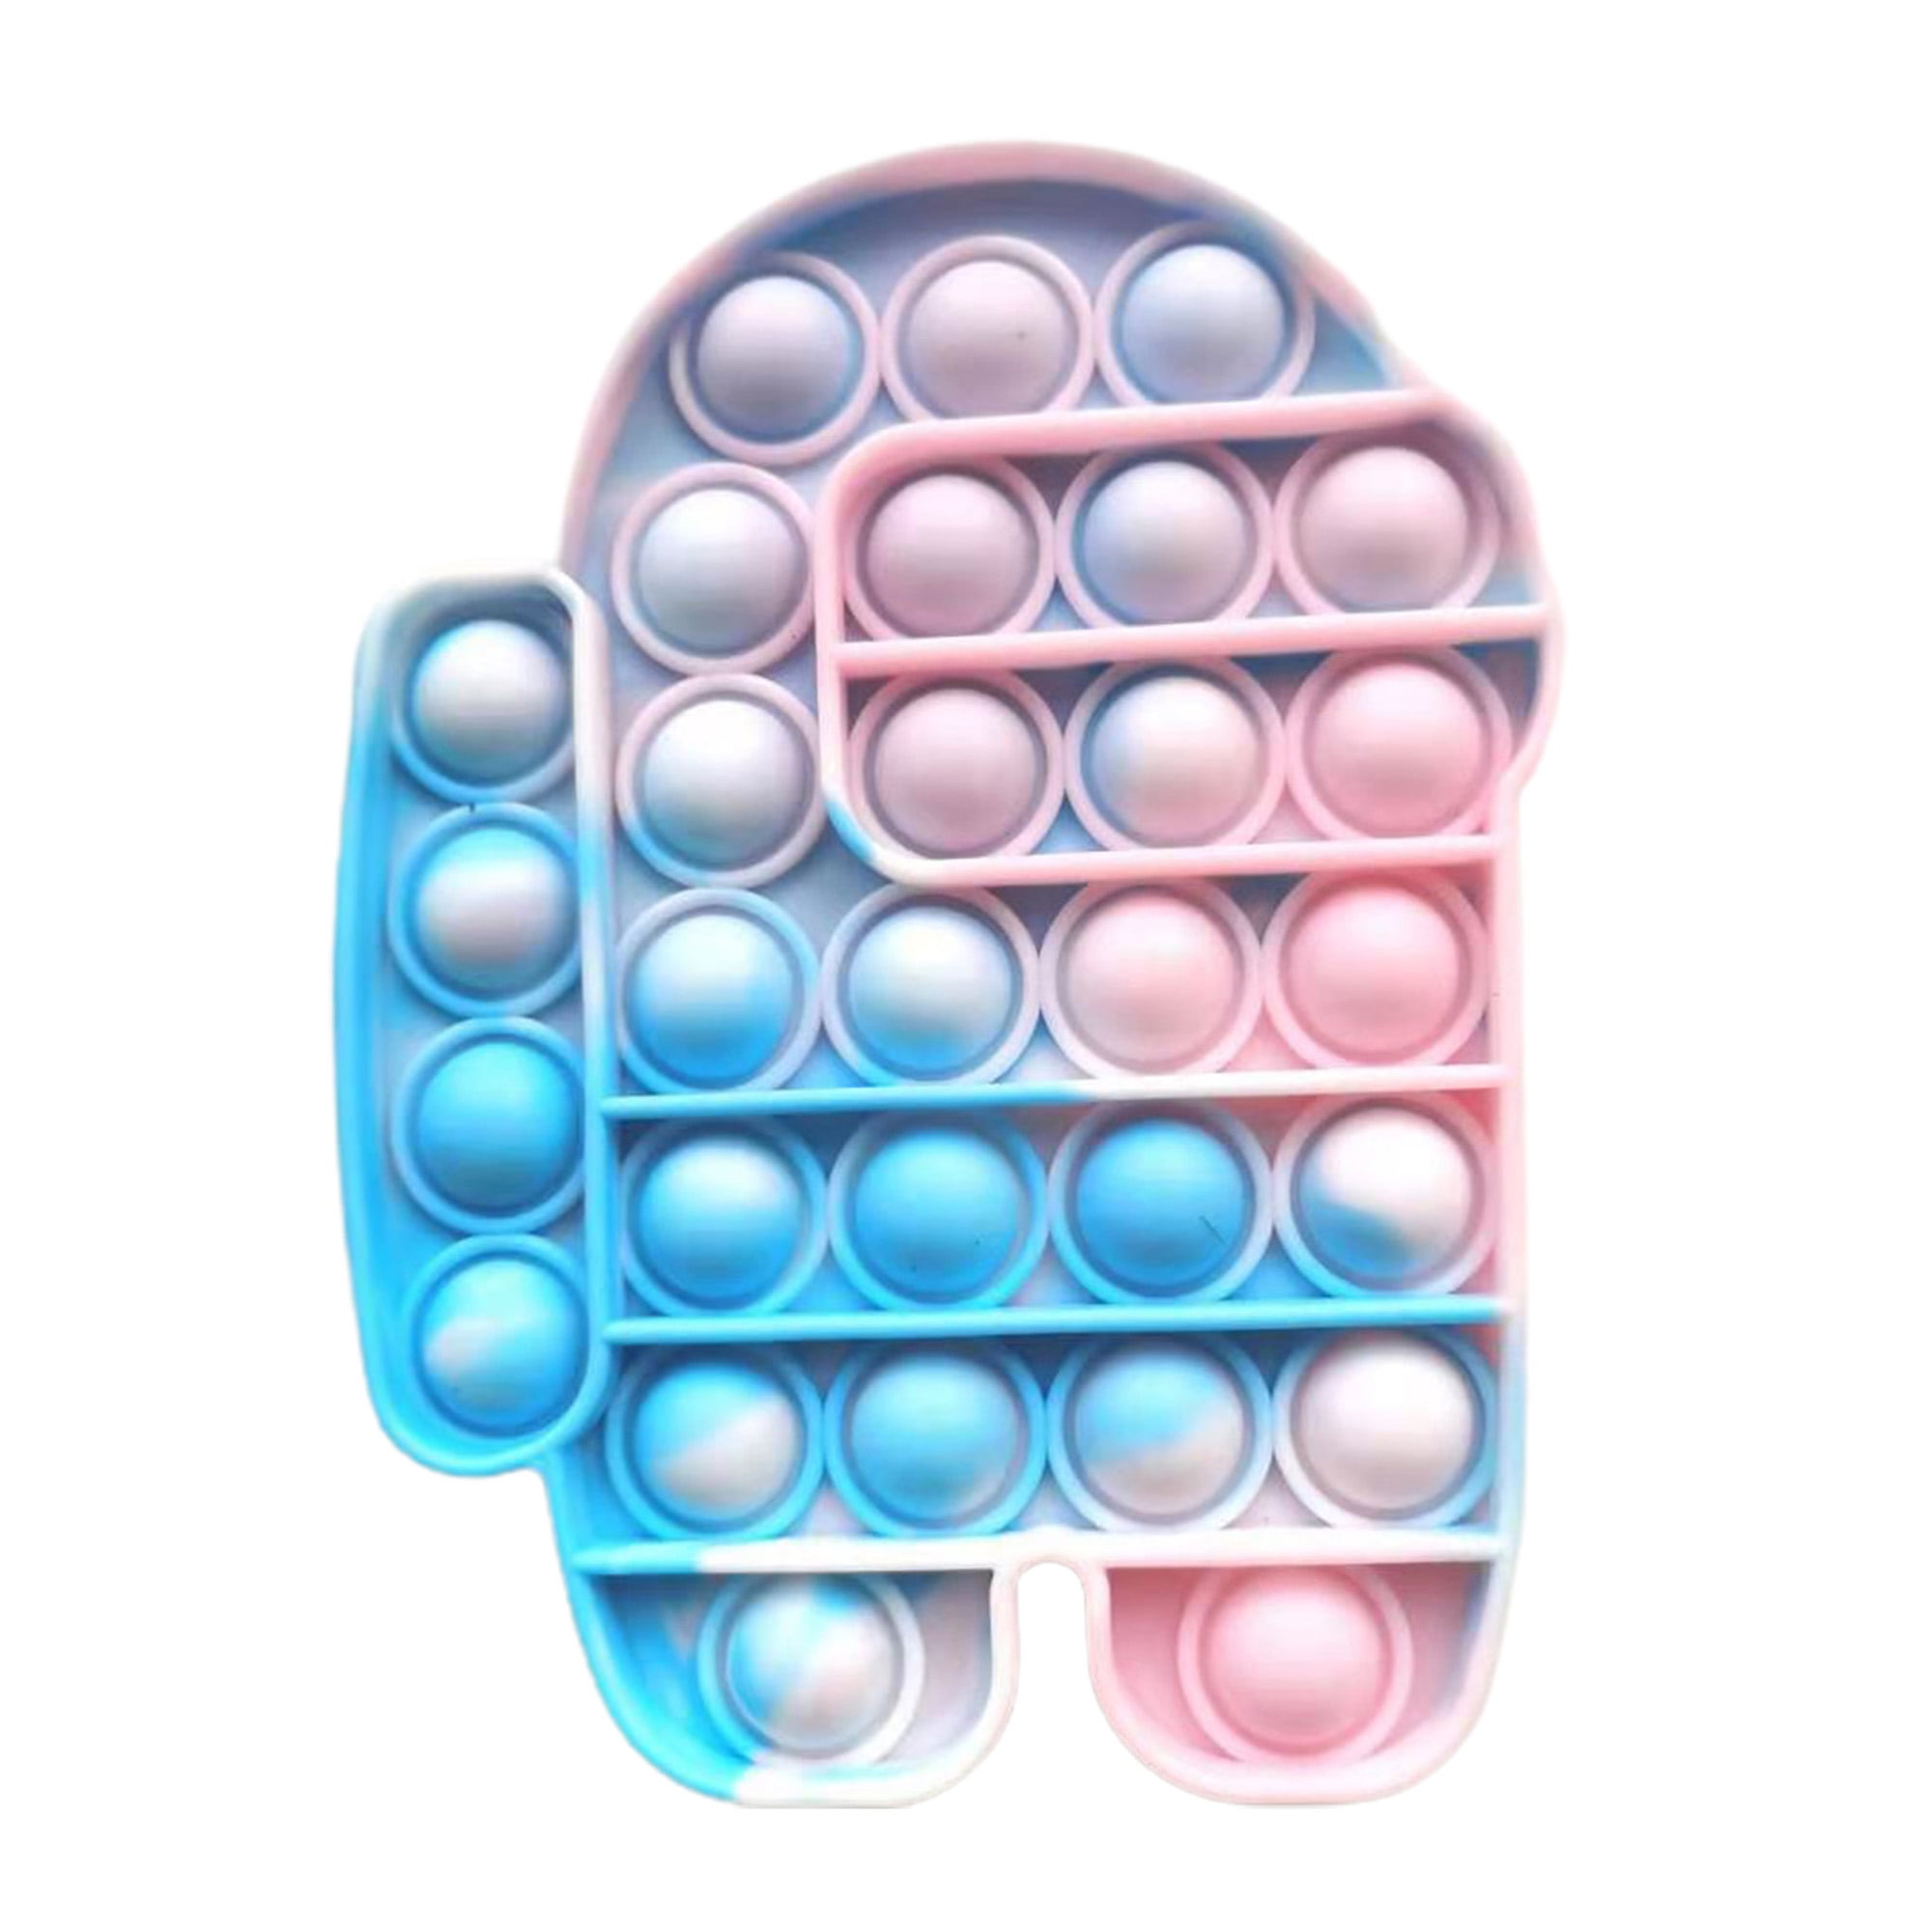 Push Pop Bubble Fidget Toy, Stress Relief Sensory Toy Desktop Game, Size: One size, Blue